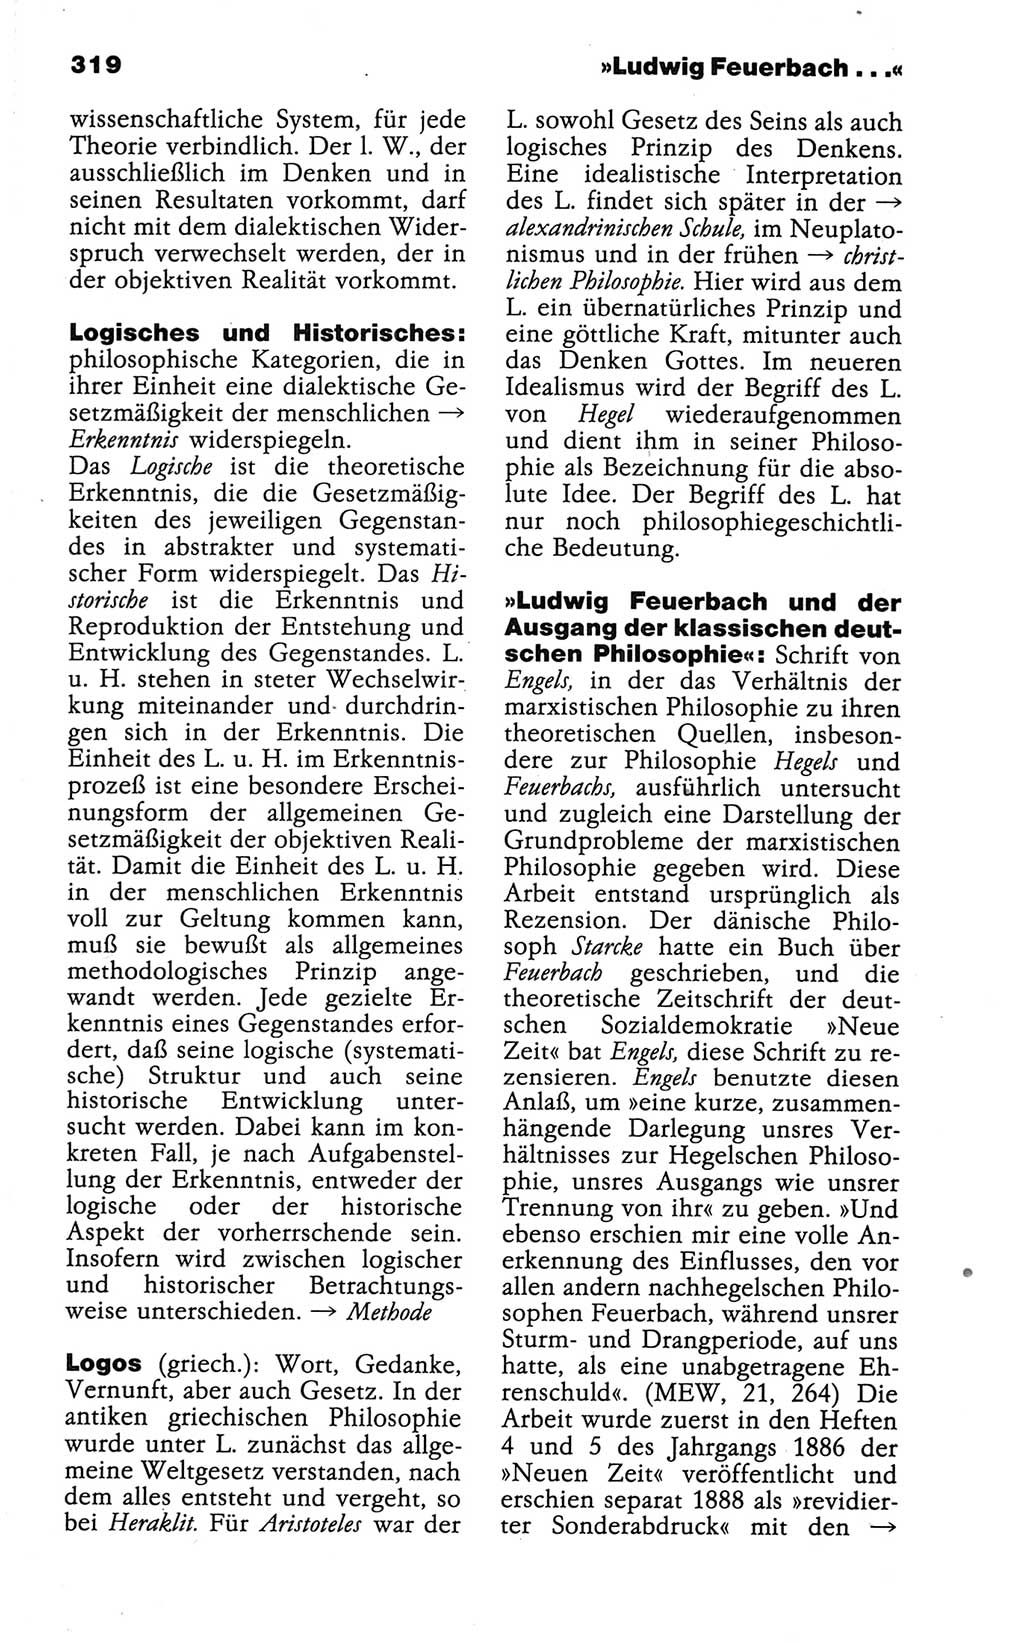 Wörterbuch der marxistisch-leninistischen Philosophie [Deutsche Demokratische Republik (DDR)] 1986, Seite 319 (Wb. ML Phil. DDR 1986, S. 319)